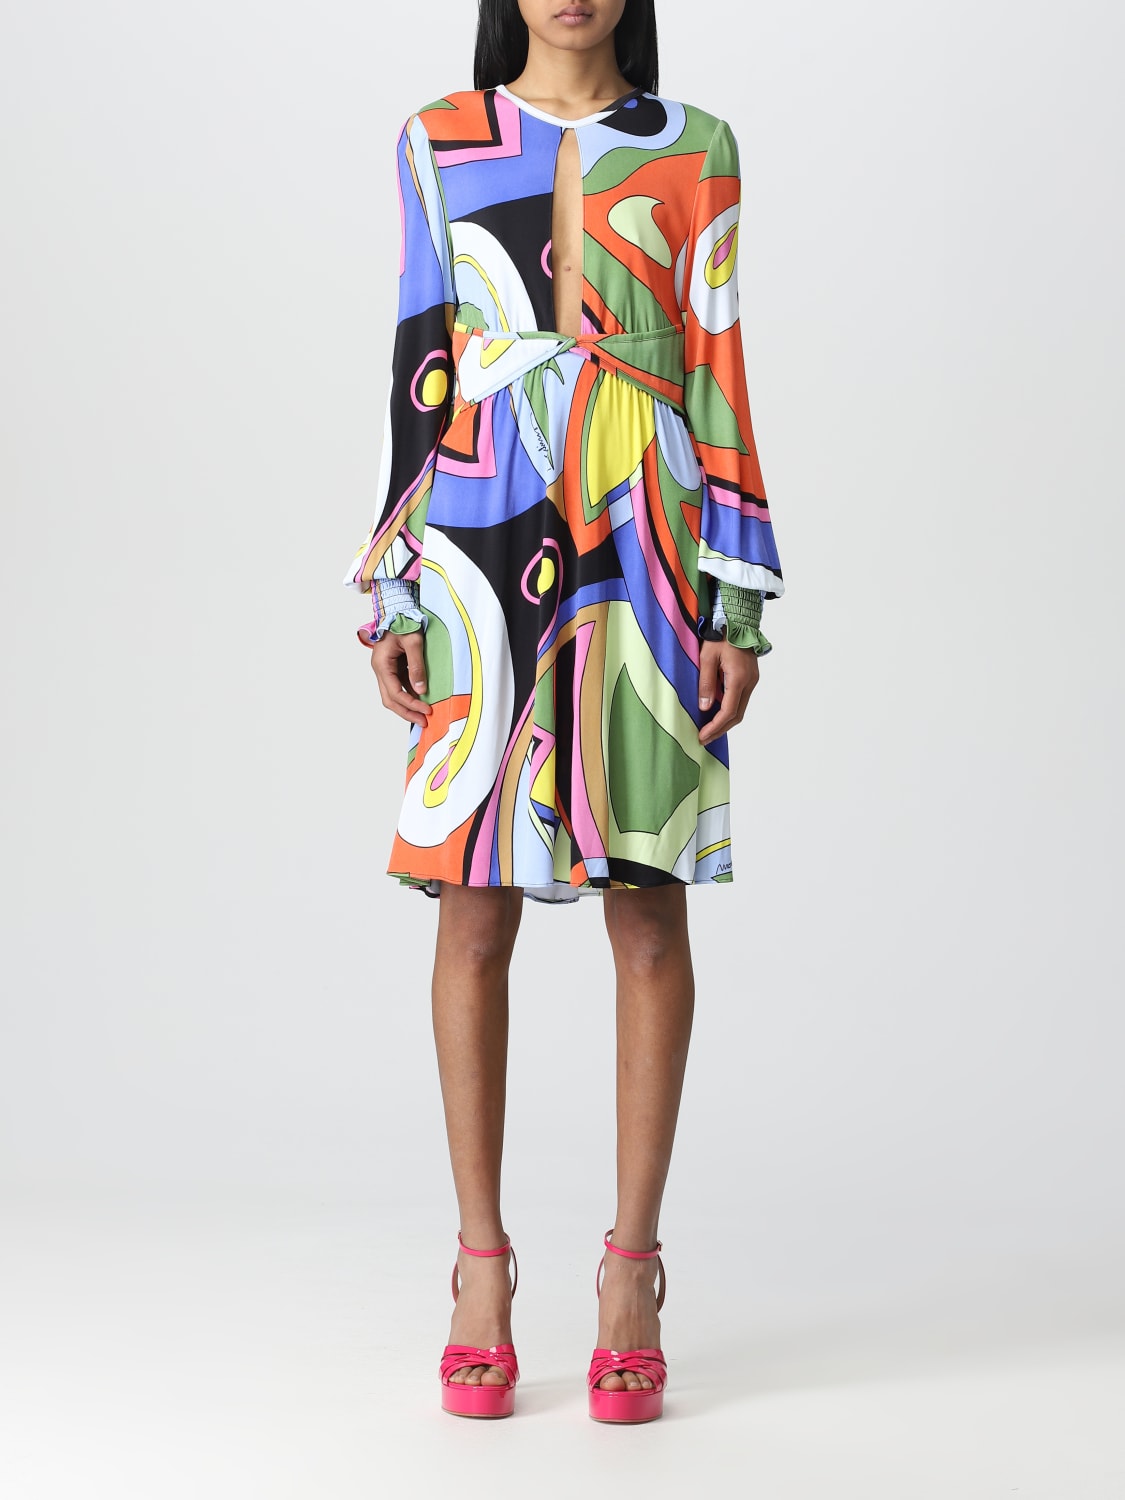 MOSCHINO COUTURE: Vestido para mujer, Fantasía | Vestido Moschino Couture 04400556 línea en GIGLIO.COM